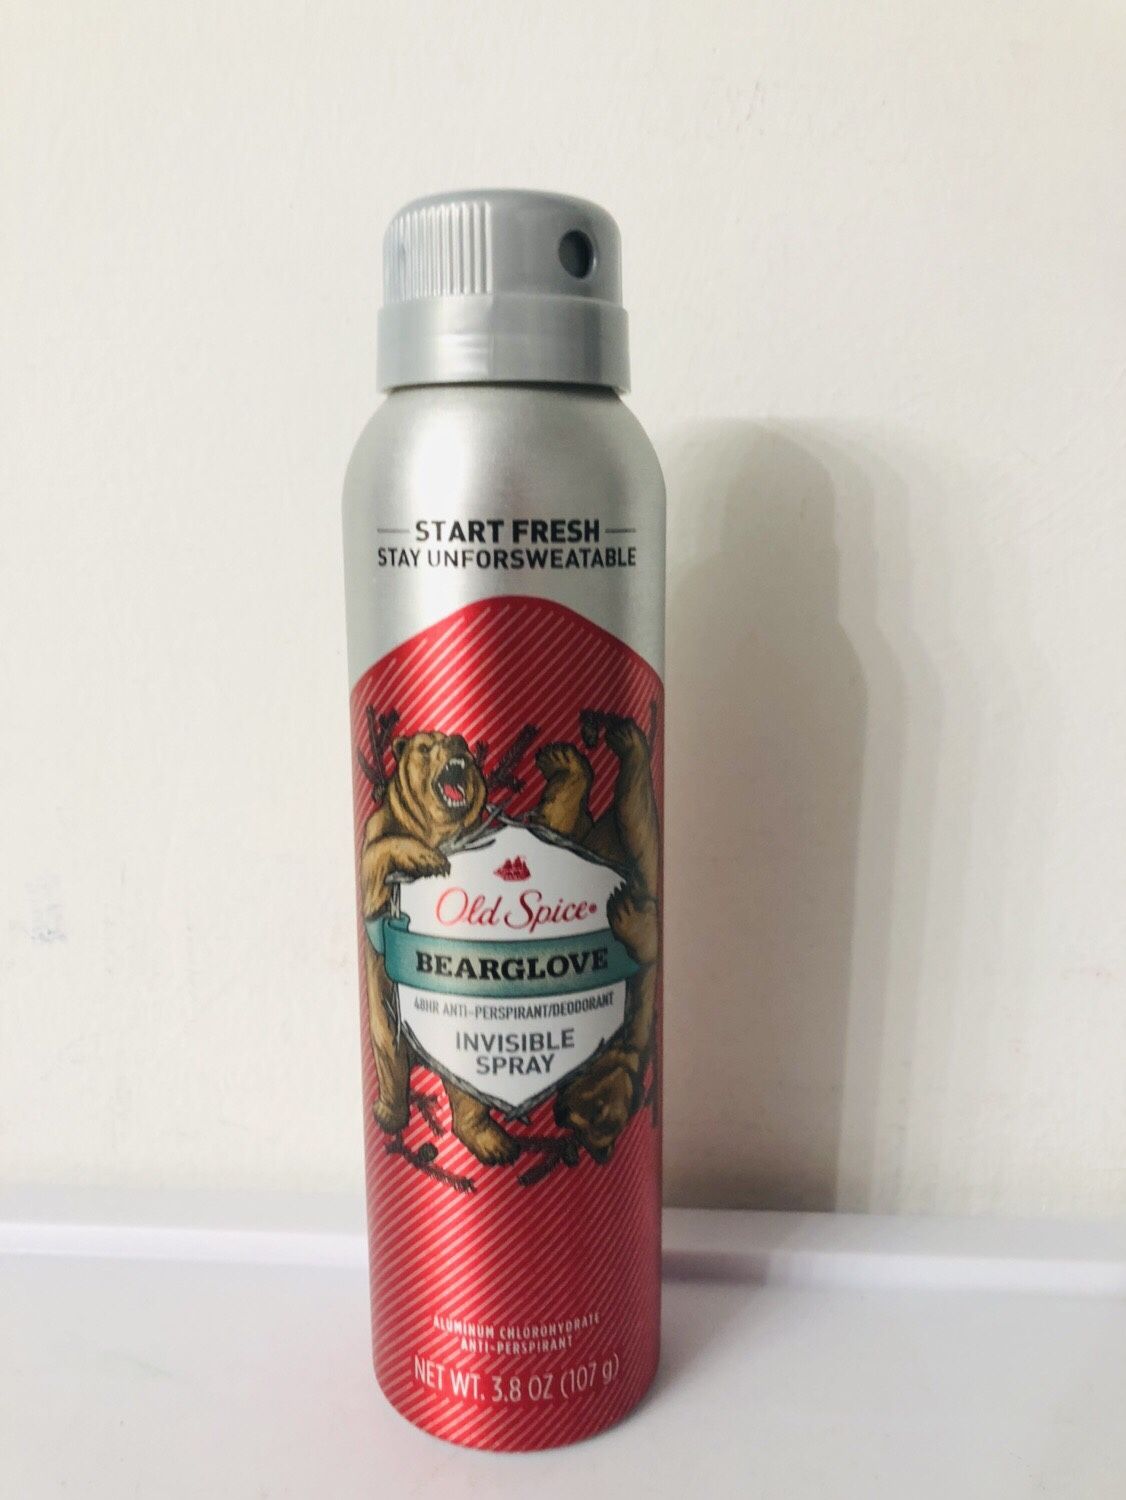 Old spice desodorante spray 3.8 oz